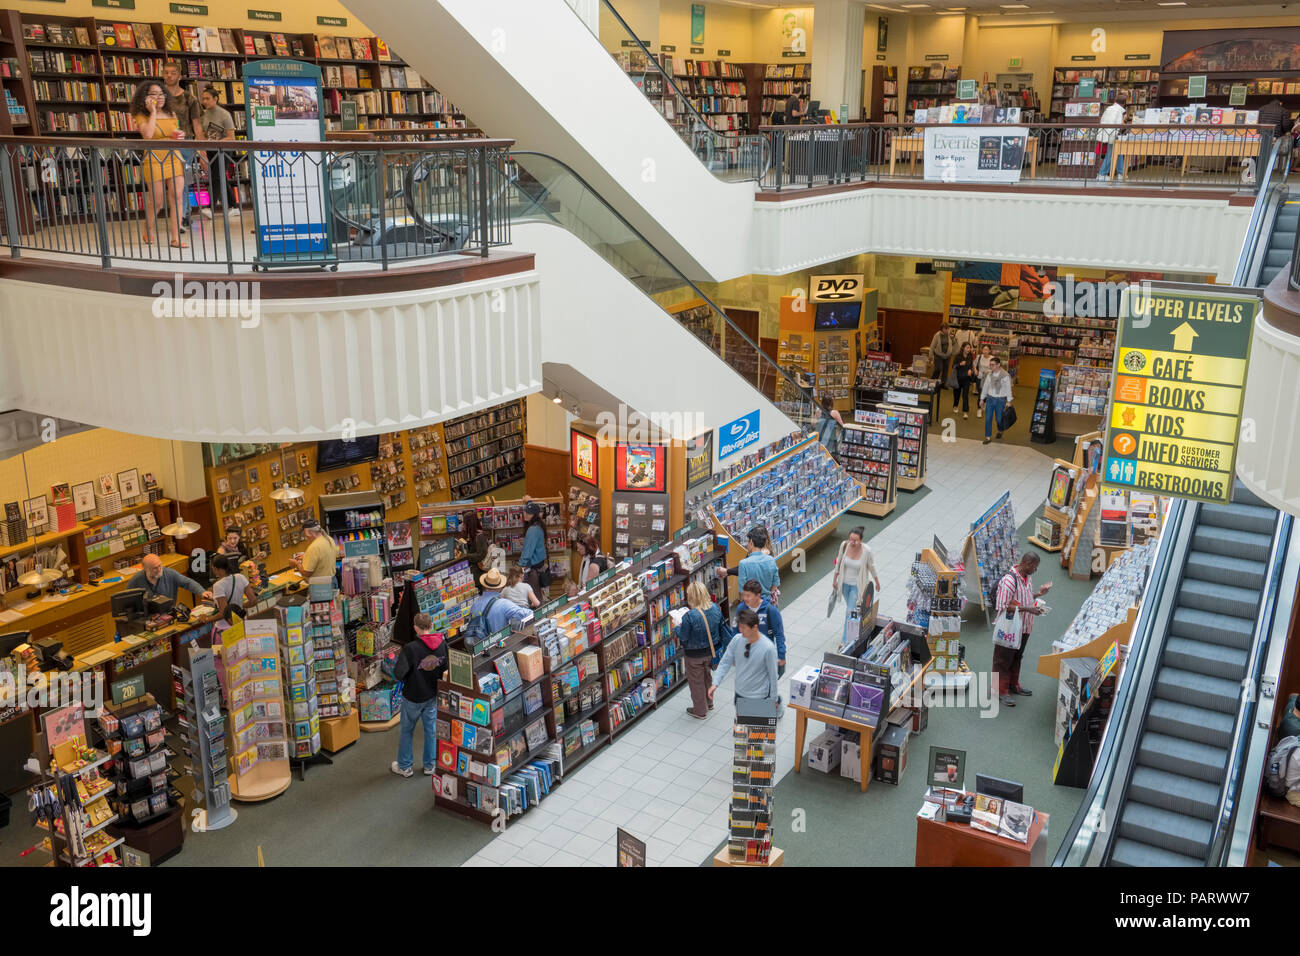 L'intérieur de la librairie Barnes & Noble dans la rainure à la Farmers Market, Los Angeles, Californie, USA Banque D'Images